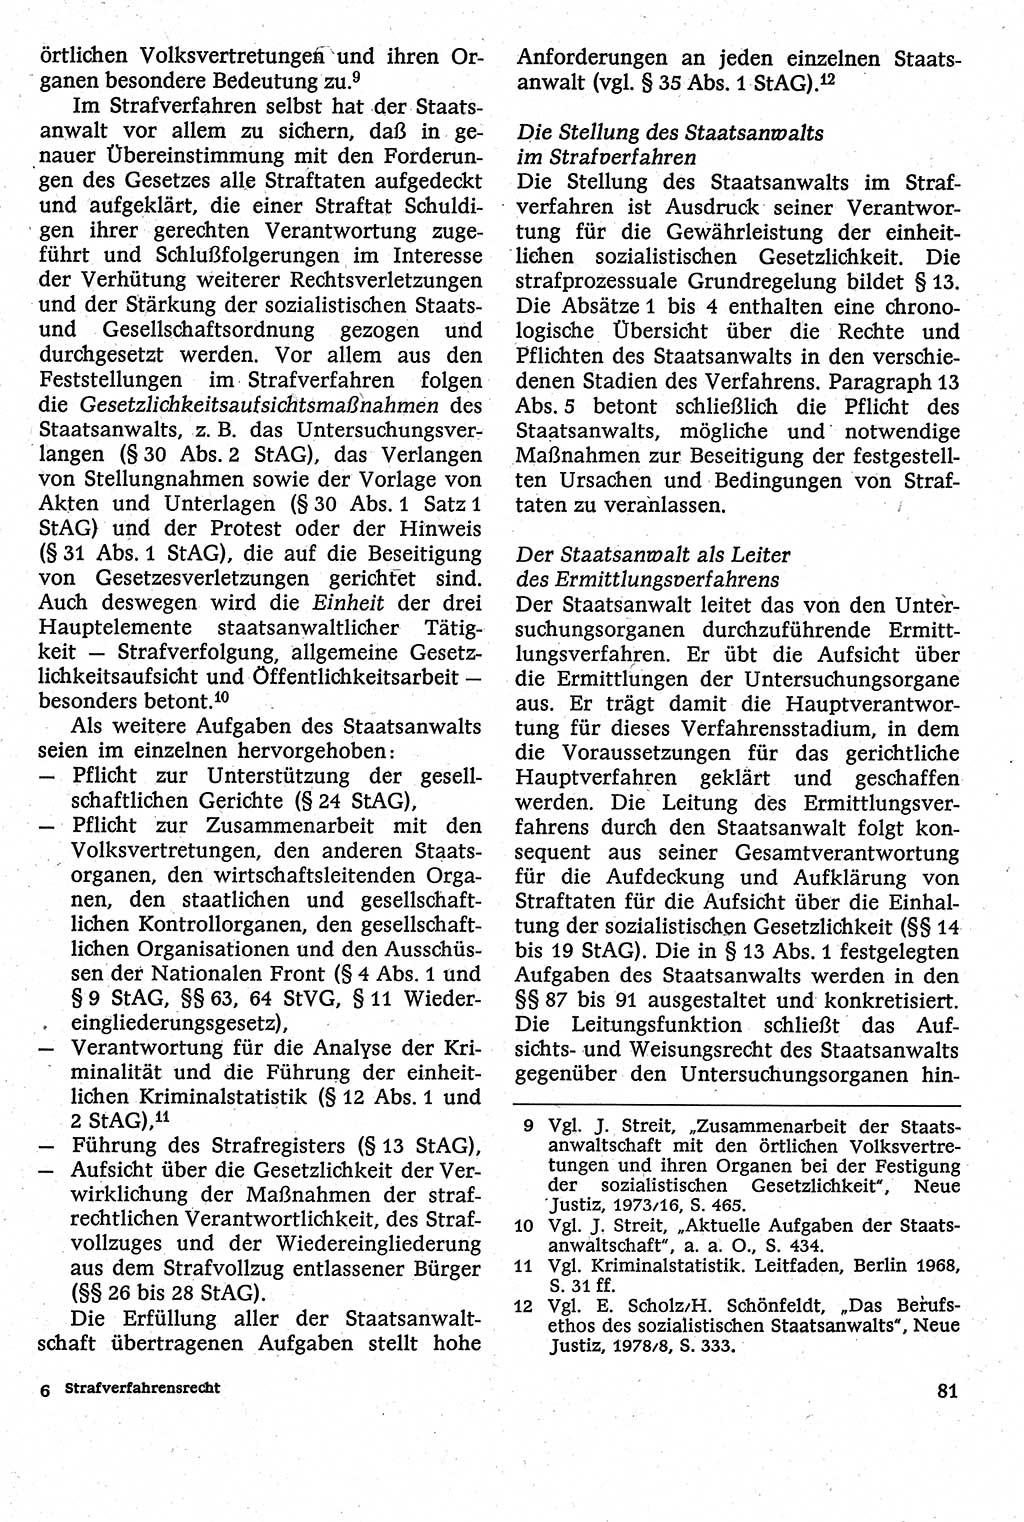 Strafverfahrensrecht [Deutsche Demokratische Republik (DDR)], Lehrbuch 1982, Seite 81 (Strafverf.-R. DDR Lb. 1982, S. 81)